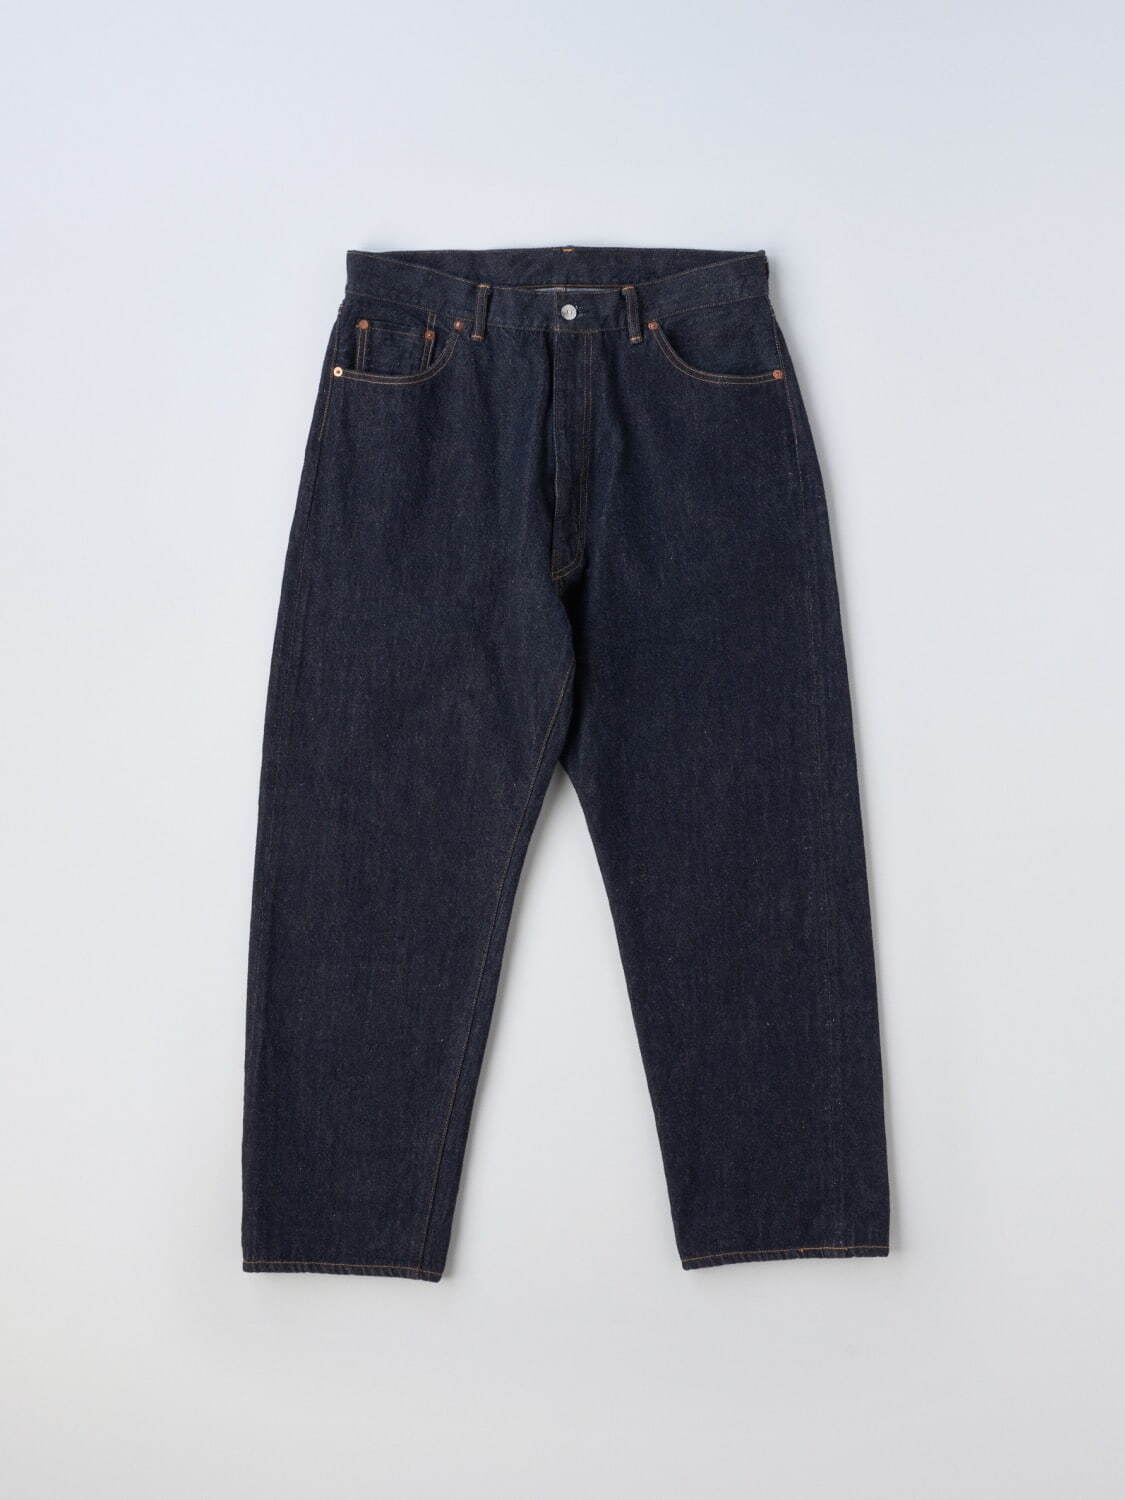 5P Zipper Denim Pants 26,400円